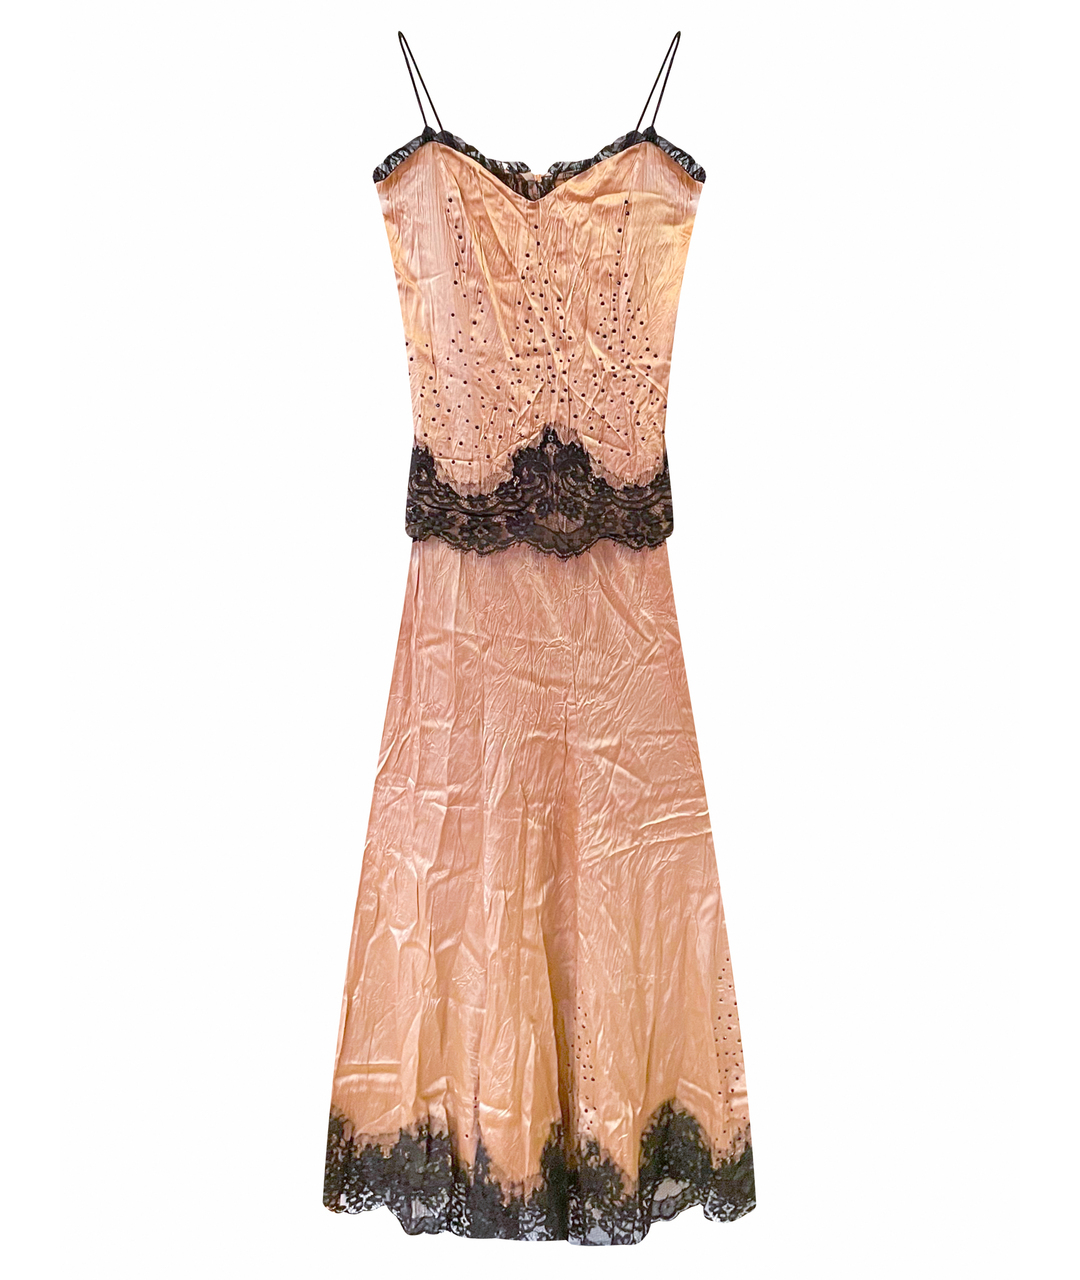 OPPIOFASHION Золотое шелковое вечернее платье, фото 1